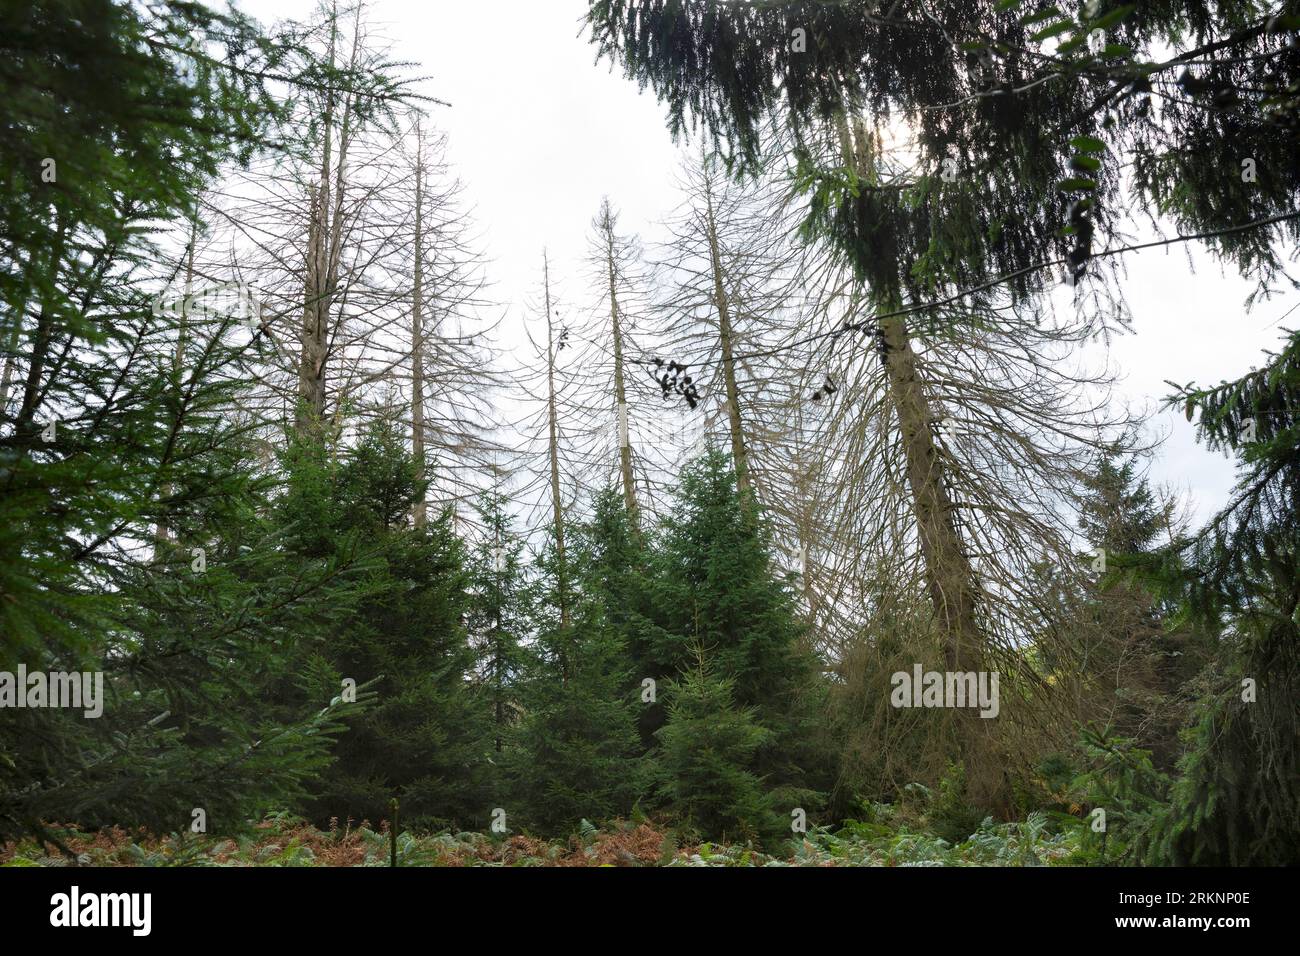 L'épinette de Norvège (Picea abies), la forêt d'épinettes, les épinettes ont séché et ont été endommagées par les coléoptères de l'écorce, Allemagne Banque D'Images